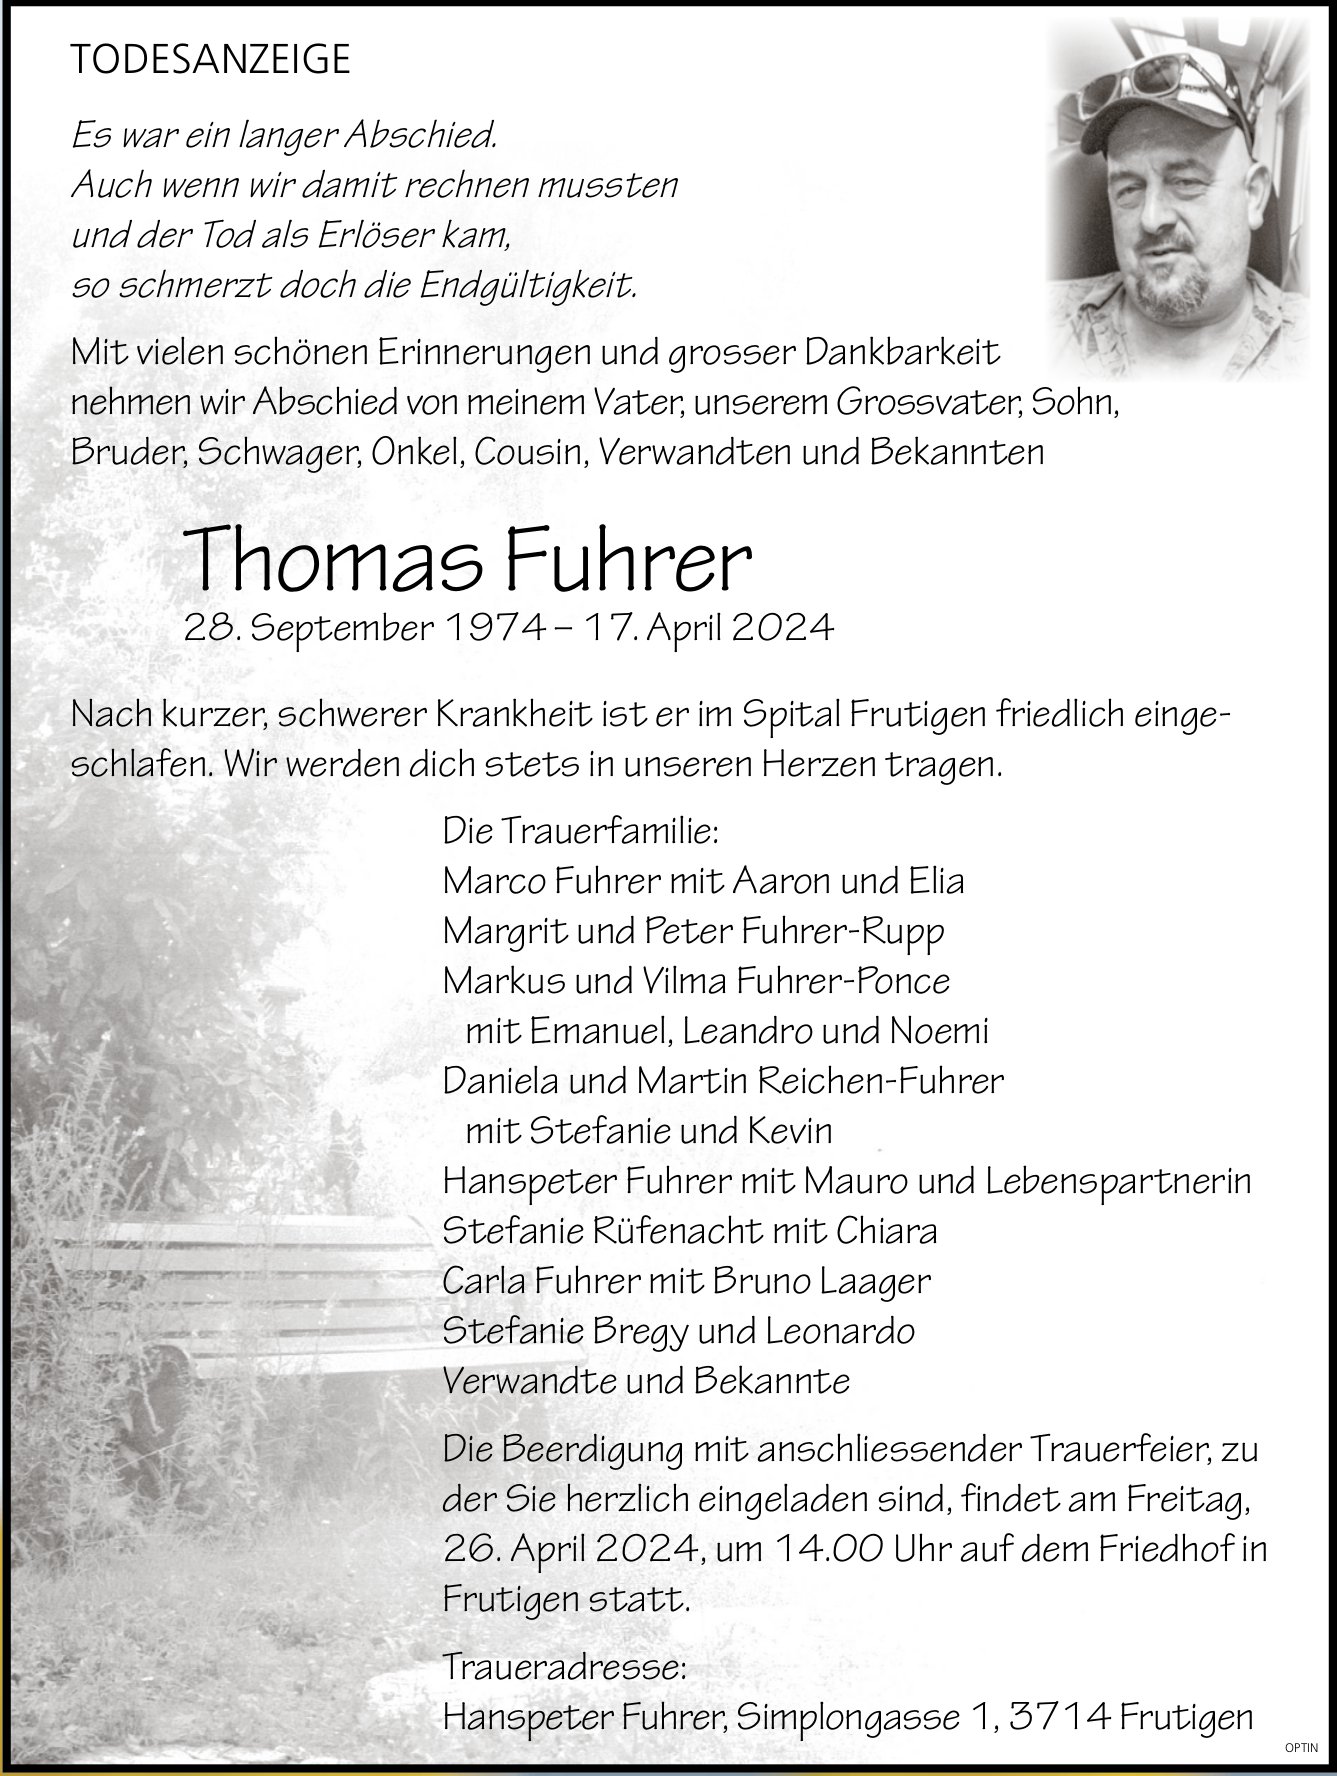 Thomas Fuhrer, April 2024 / TA